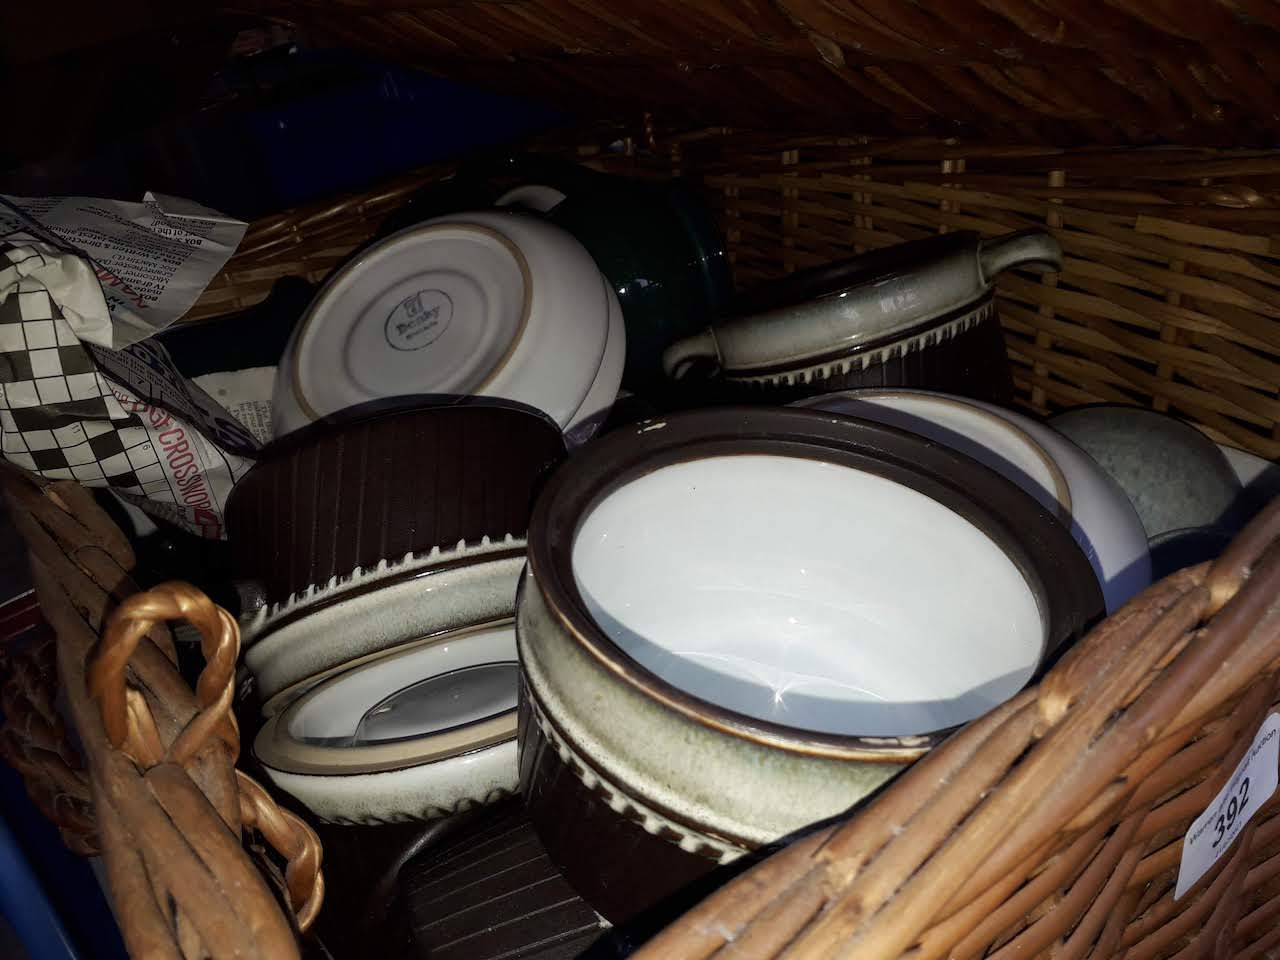 A wicker basket of Denby ware